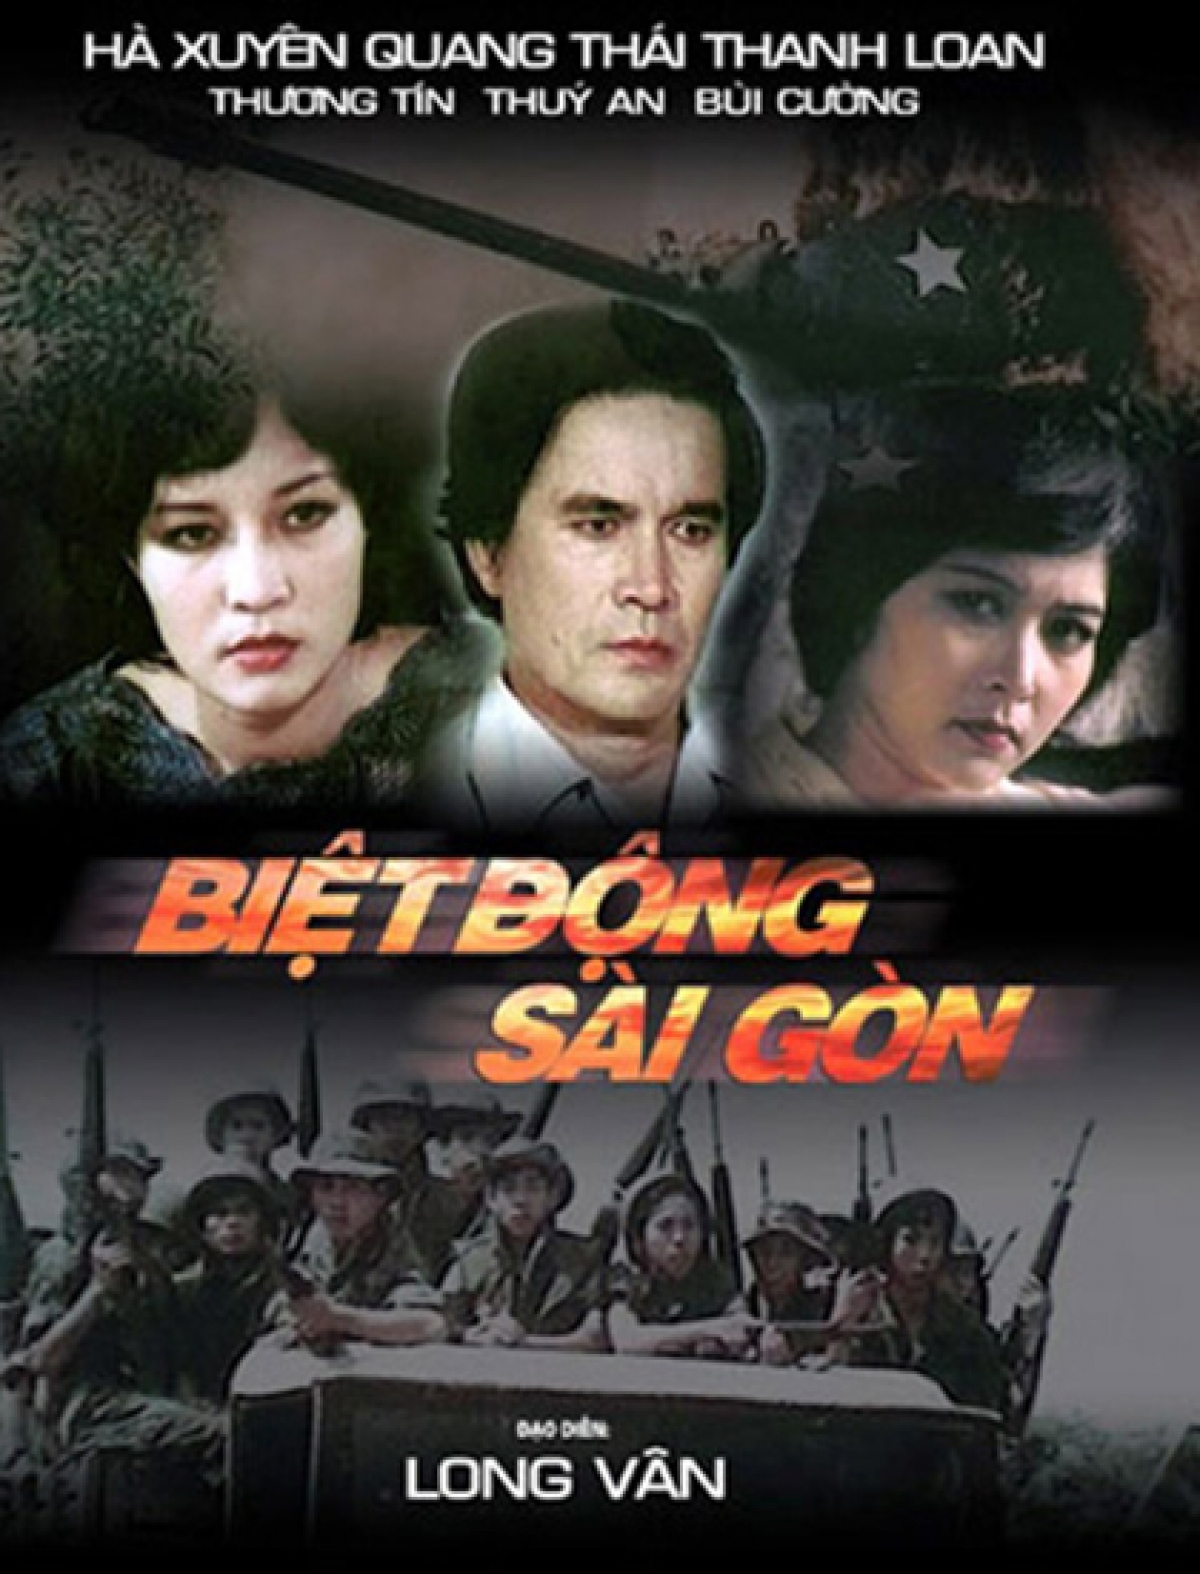 "Biệt động Sài Gòn" được xem là bộ phim kinh điển về đề tài chiến tranh